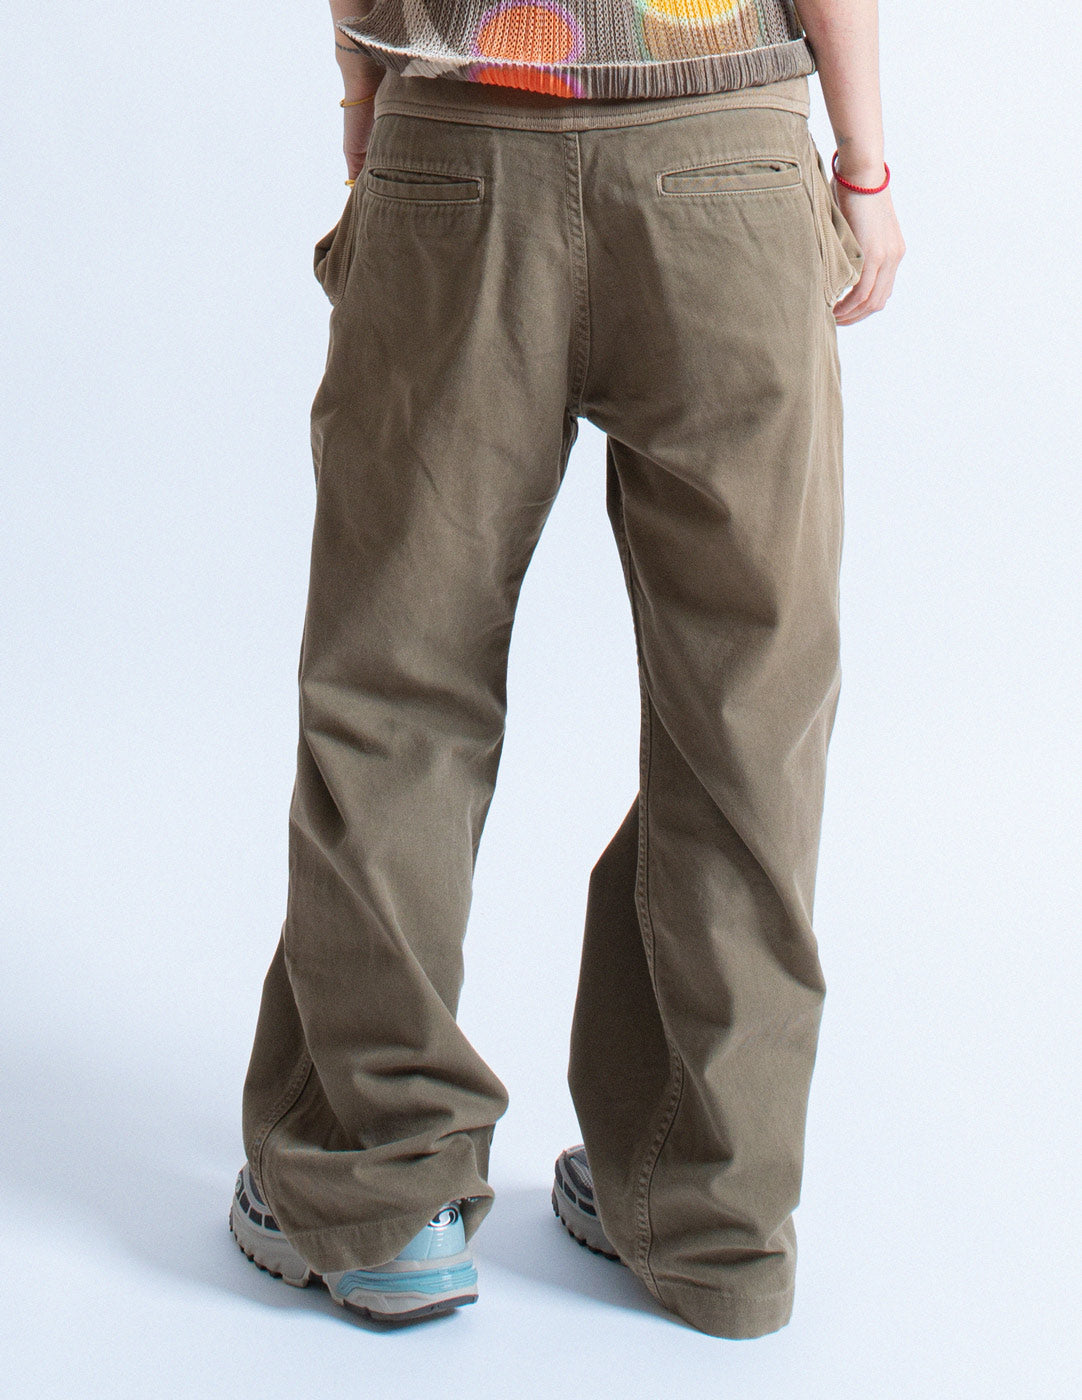 Kapital wide-legged cotton pants back detail